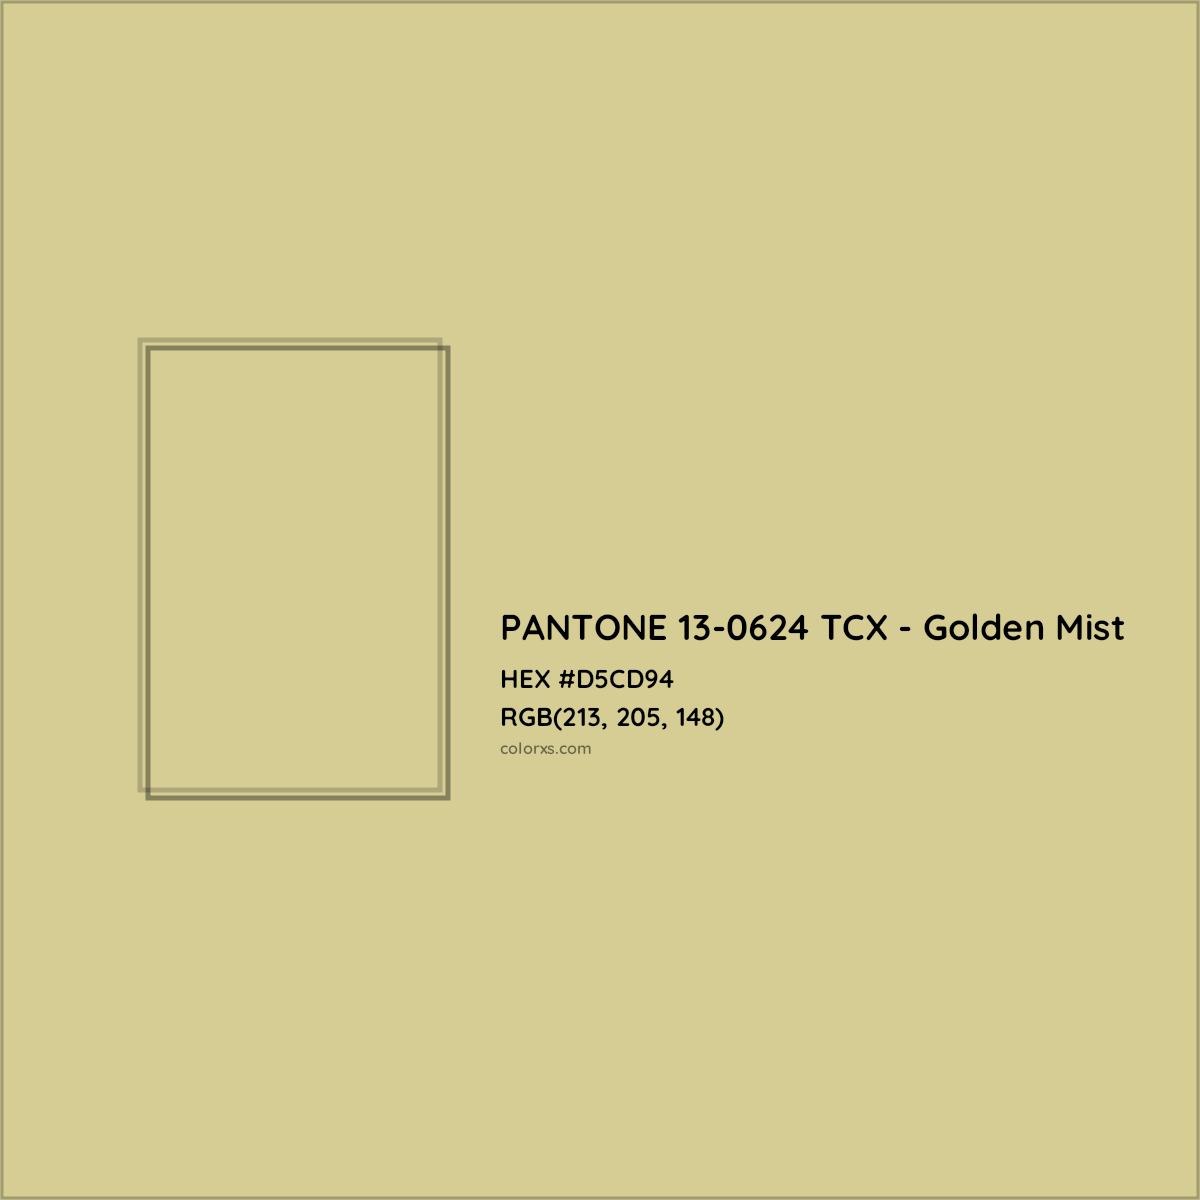 HEX #D5CD94 PANTONE 13-0624 TCX - Golden Mist CMS Pantone TCX - Color Code